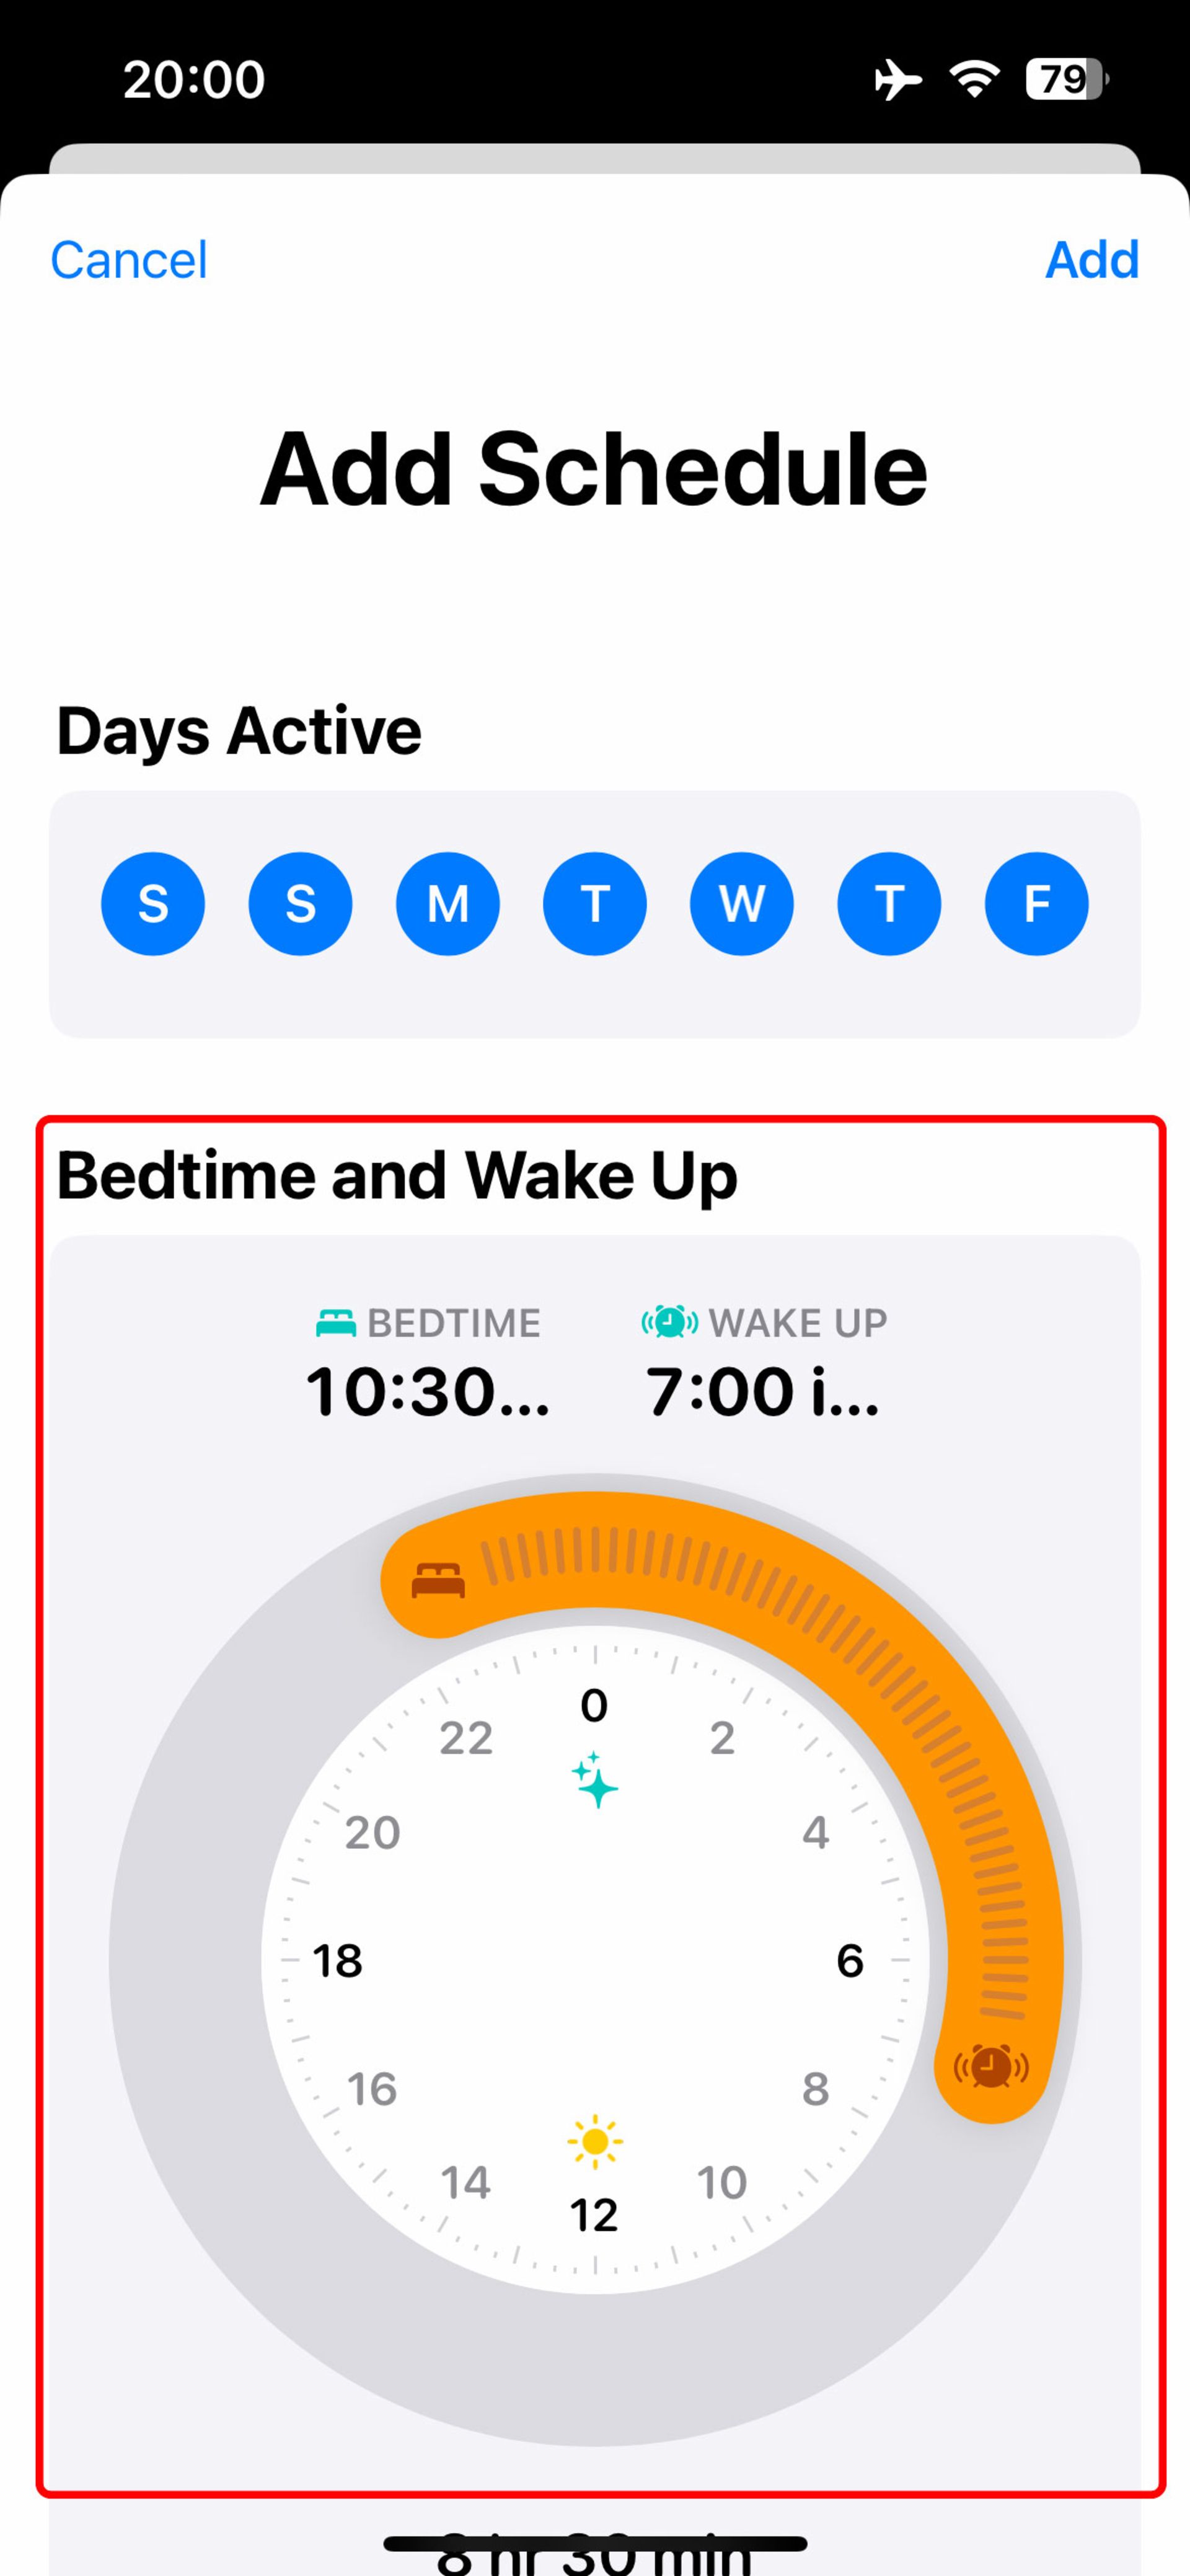 انتخاب ساعت خواب و بیدار شدن در اپلیکیشن health